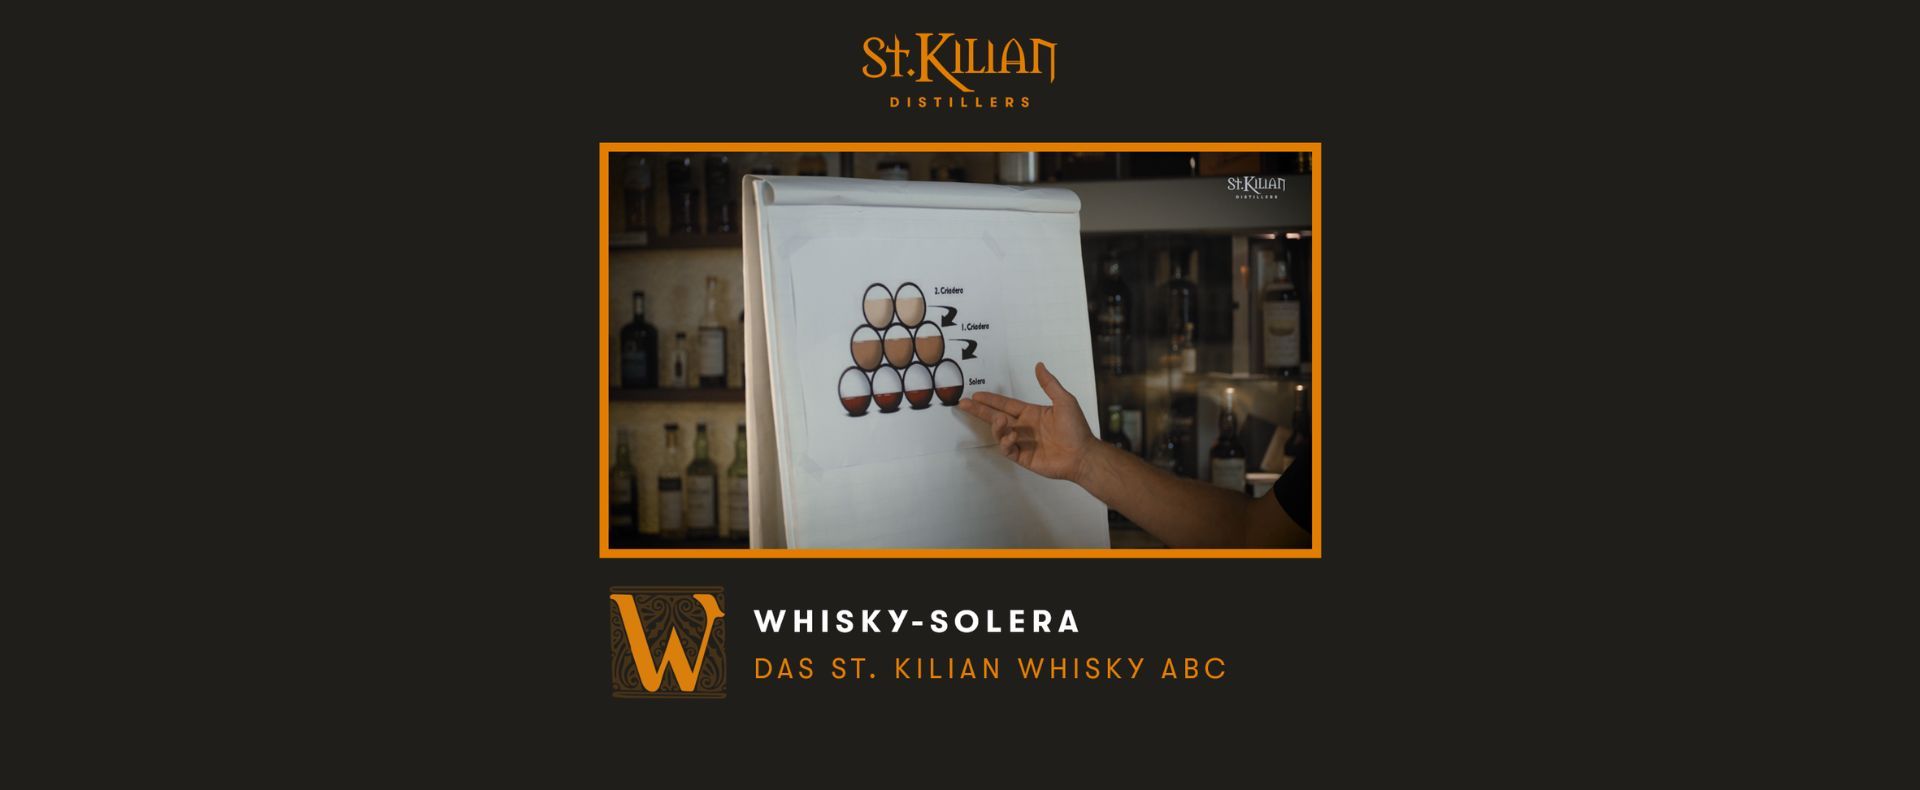 Whisky ABC - W like Whisky-Solera